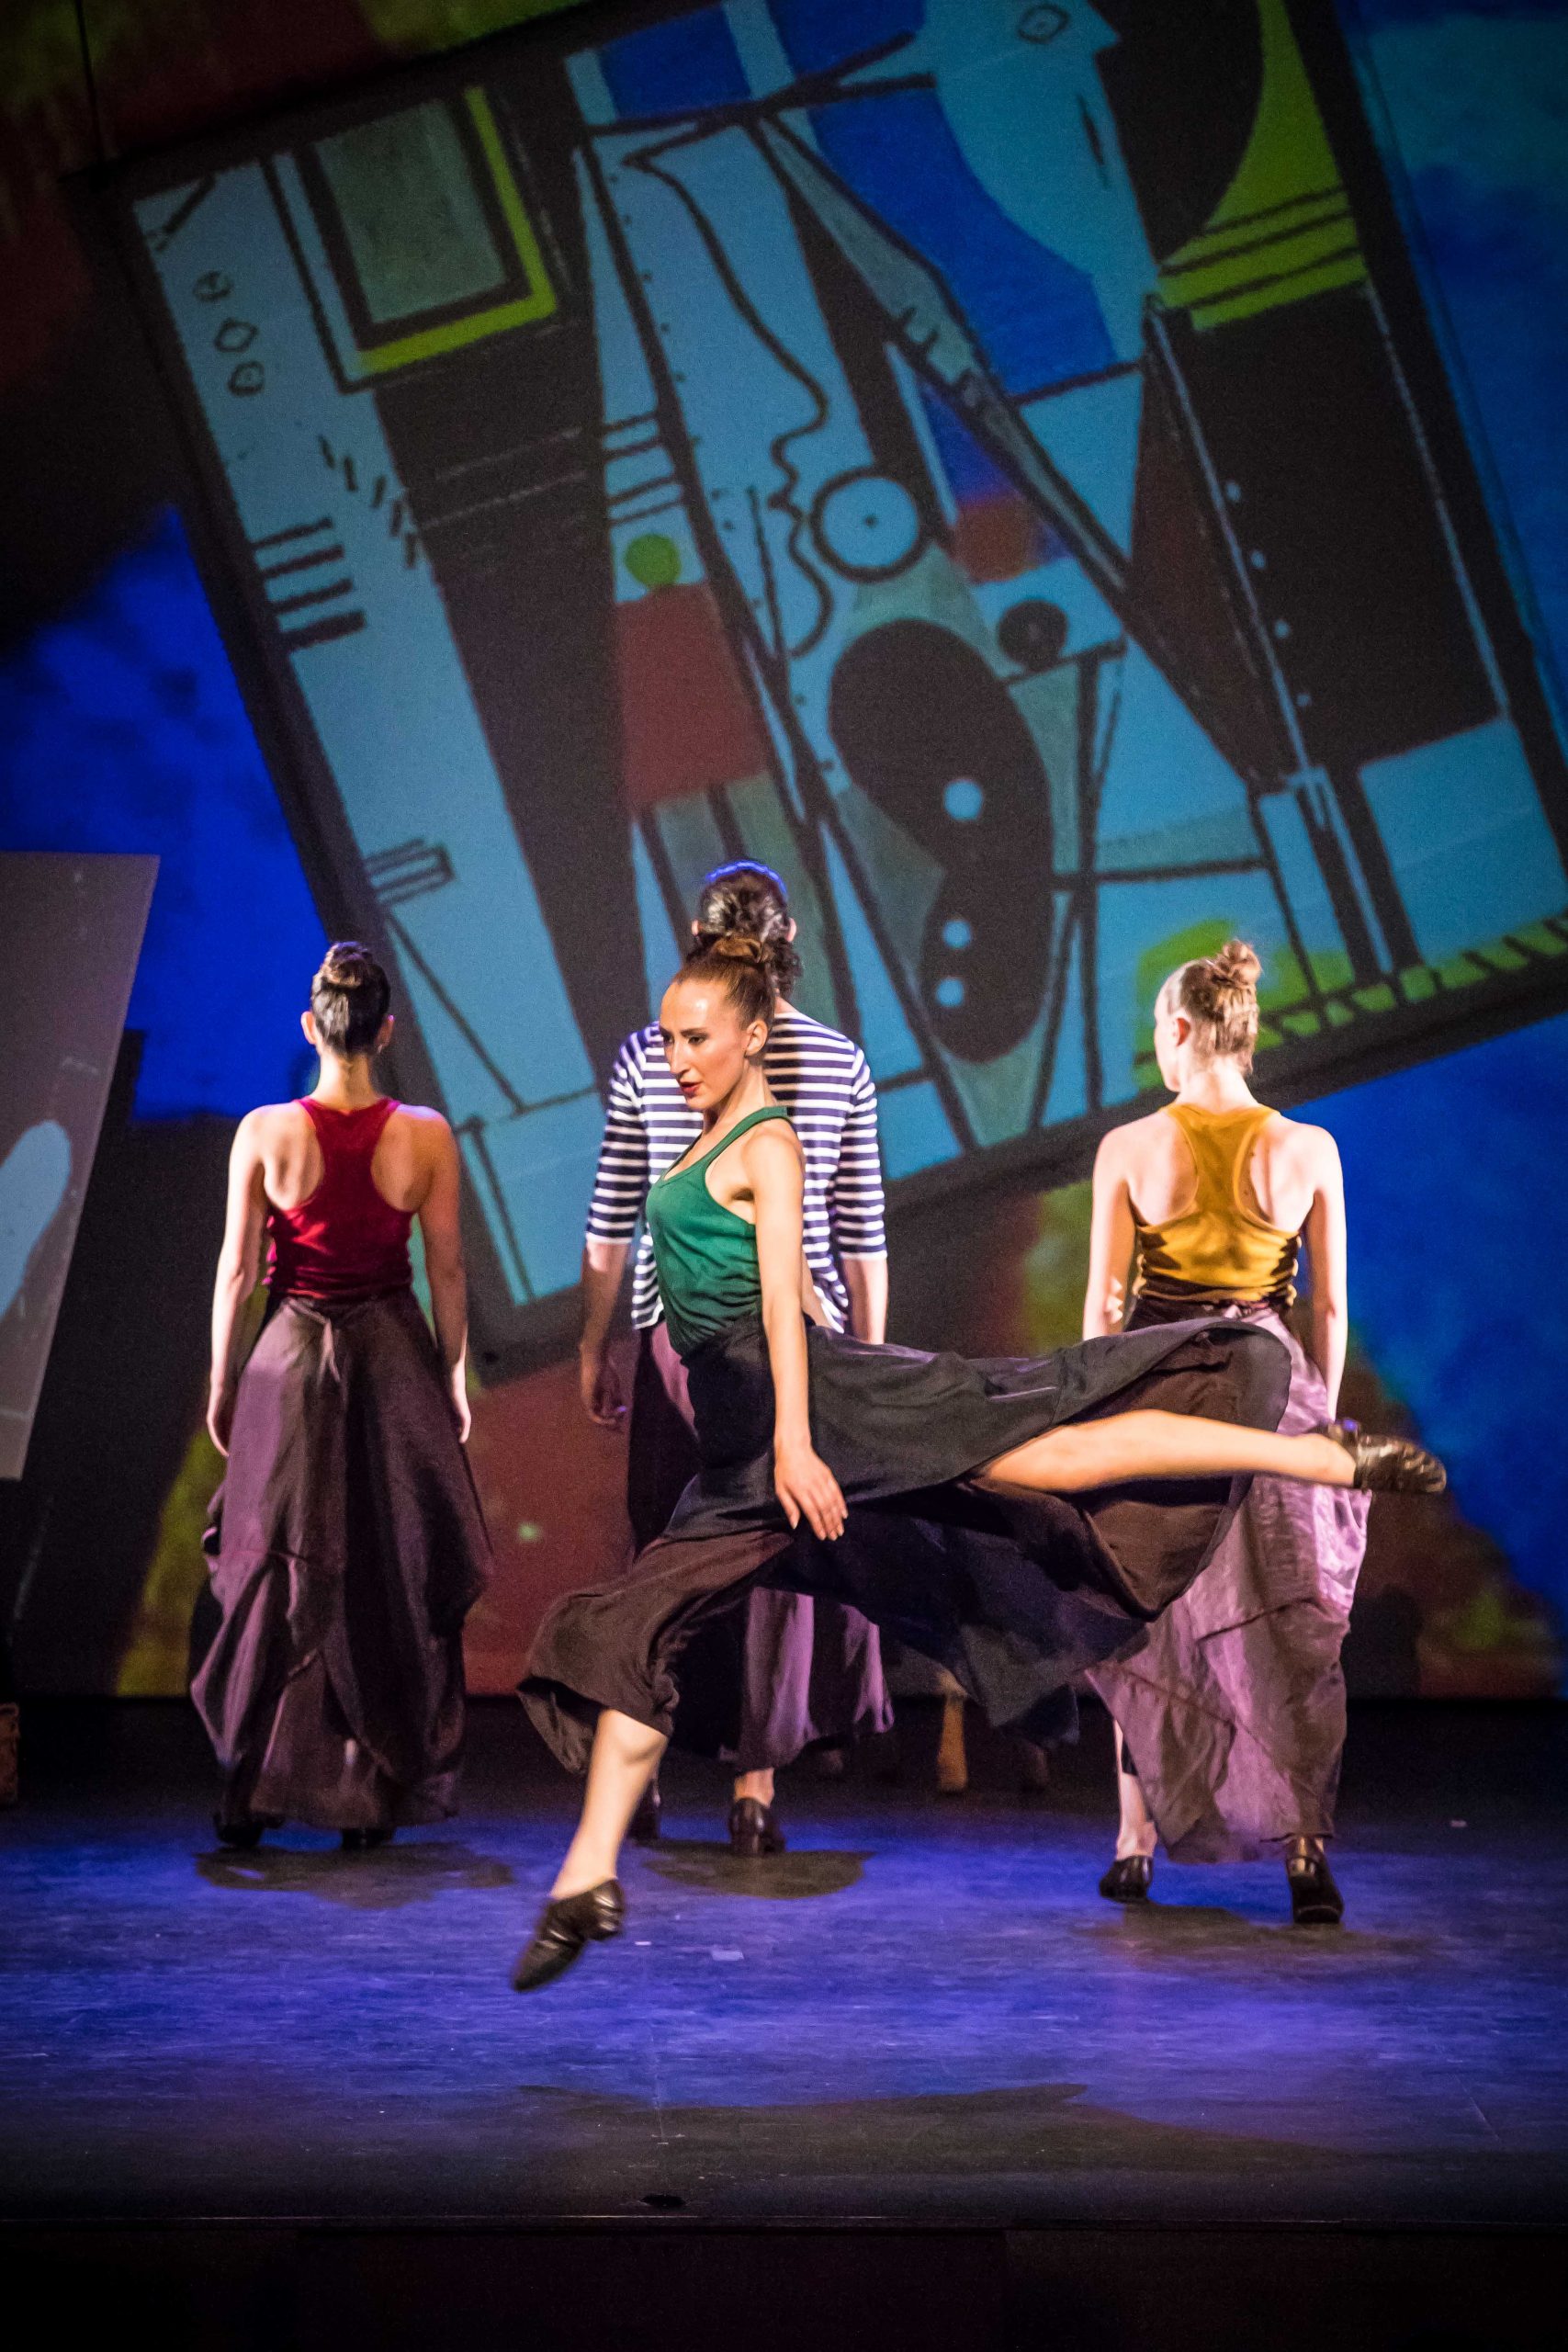 5 PICASSO EN DANZA vertical scaled فرقة “Ibérica de Danza” الإسبانية تقدم عرض  “Picasso en Danza” في مصر  بمناسبة الذكرى الخمسين على وفاة بيكاسو 